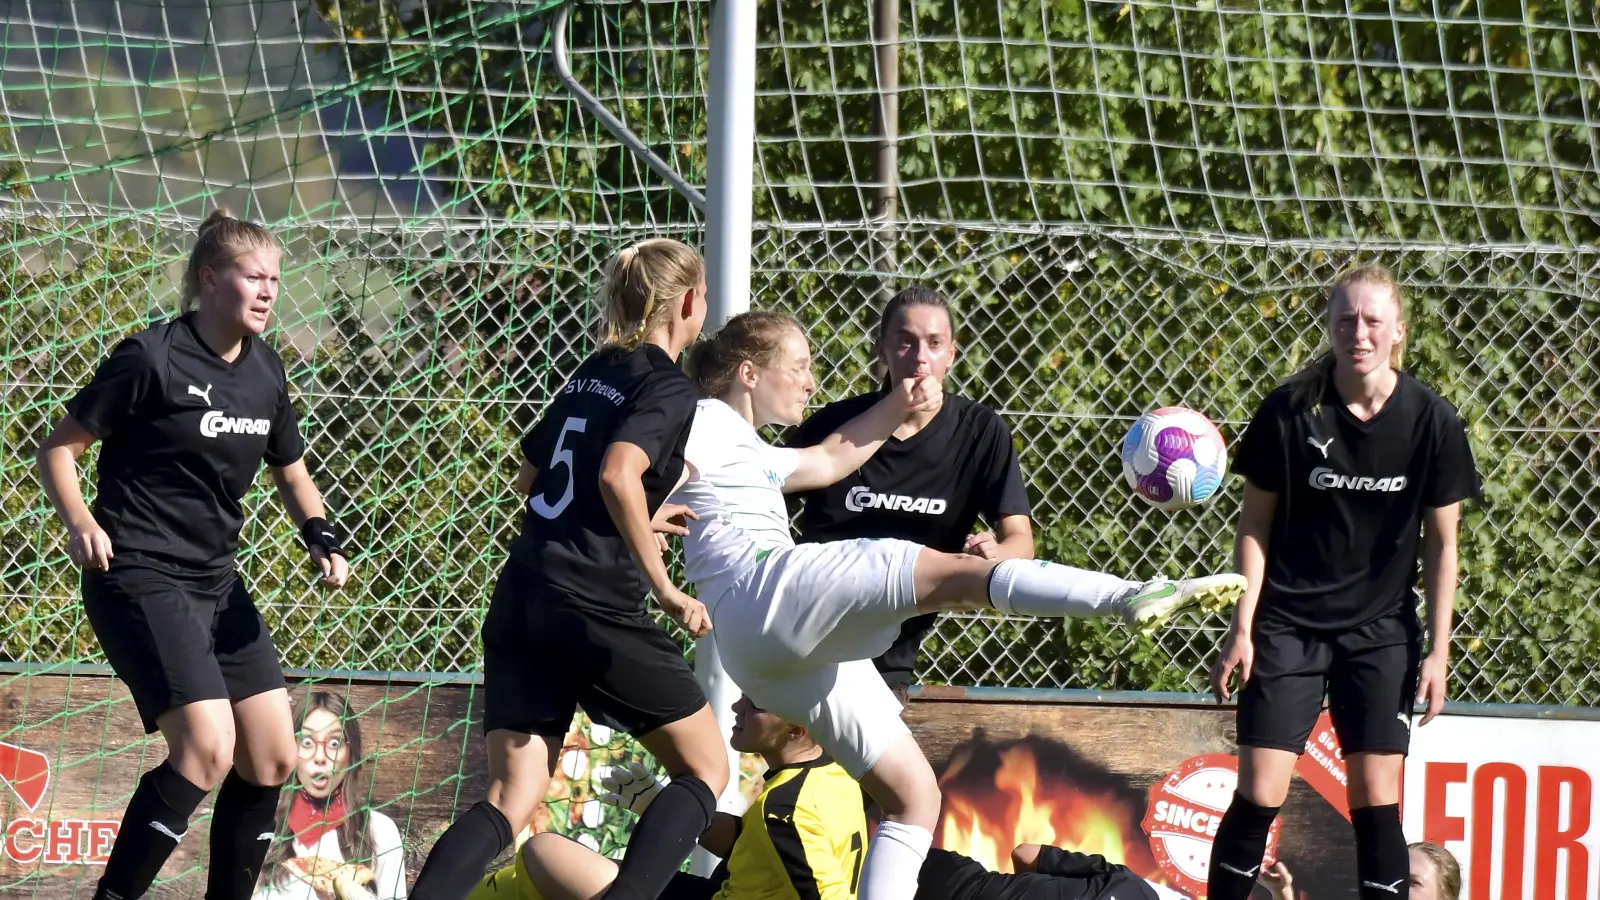 Sechs gegen eine: Annika Mauch (Mitte, weißes Trikot) von der SpVgg Greuther Fürth trifft mit einem Volleyschuss zum 4:1 für ihre Mannschaft. (Bild: Hubert Ziegler)